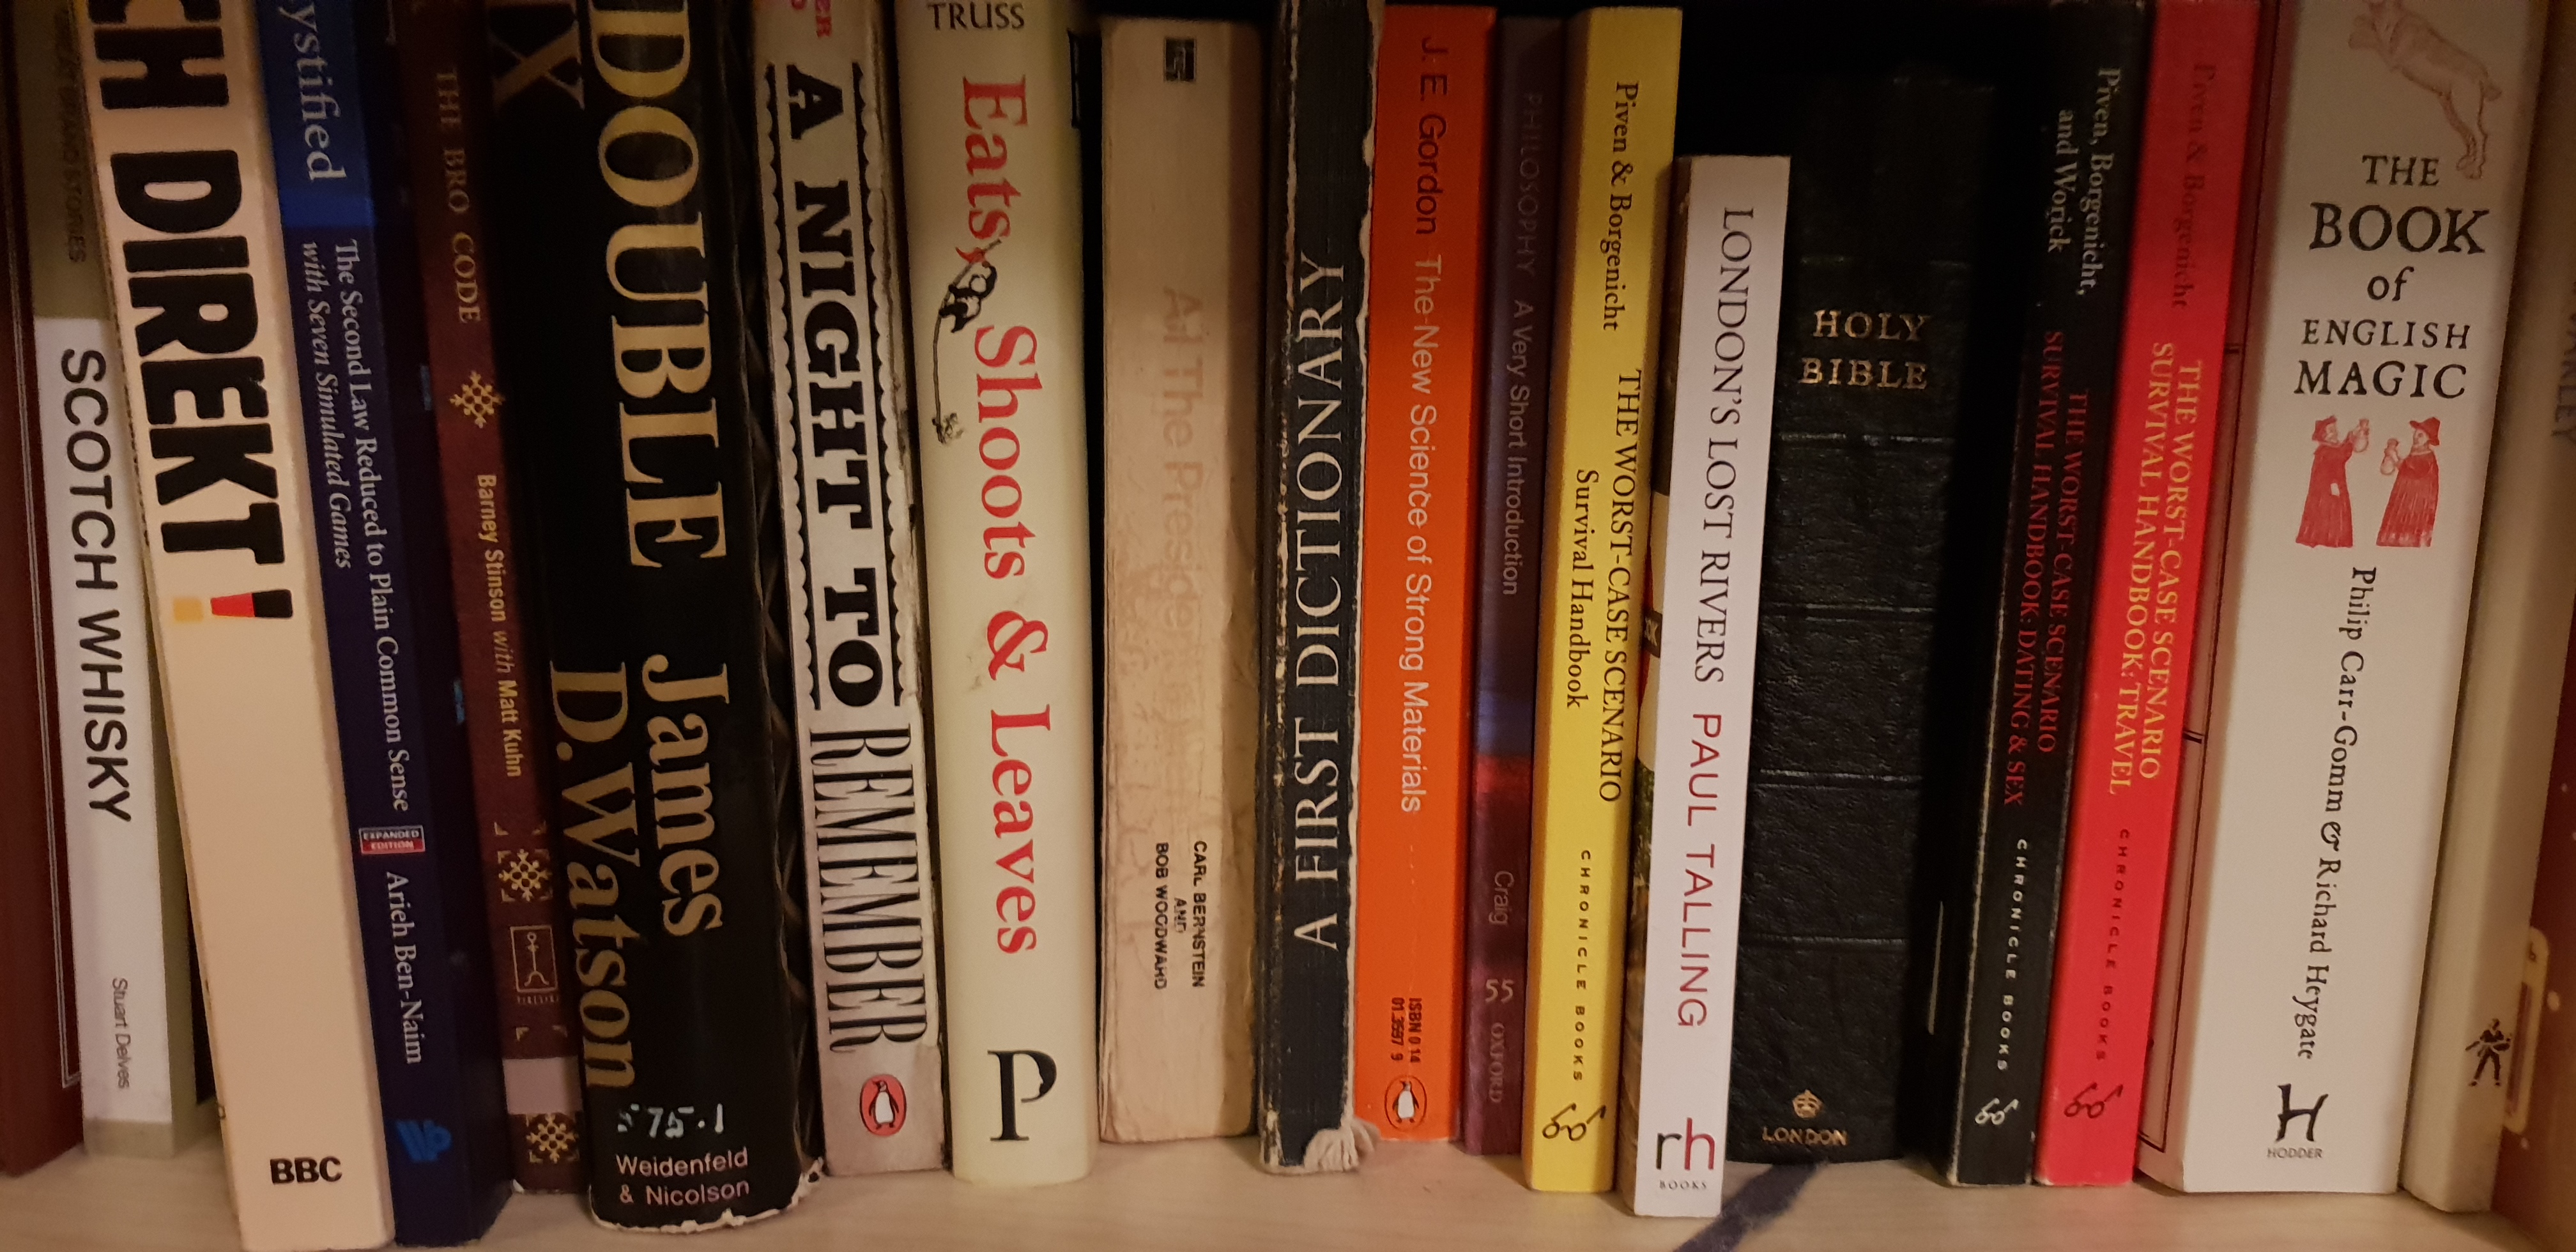 Books on a shelf.